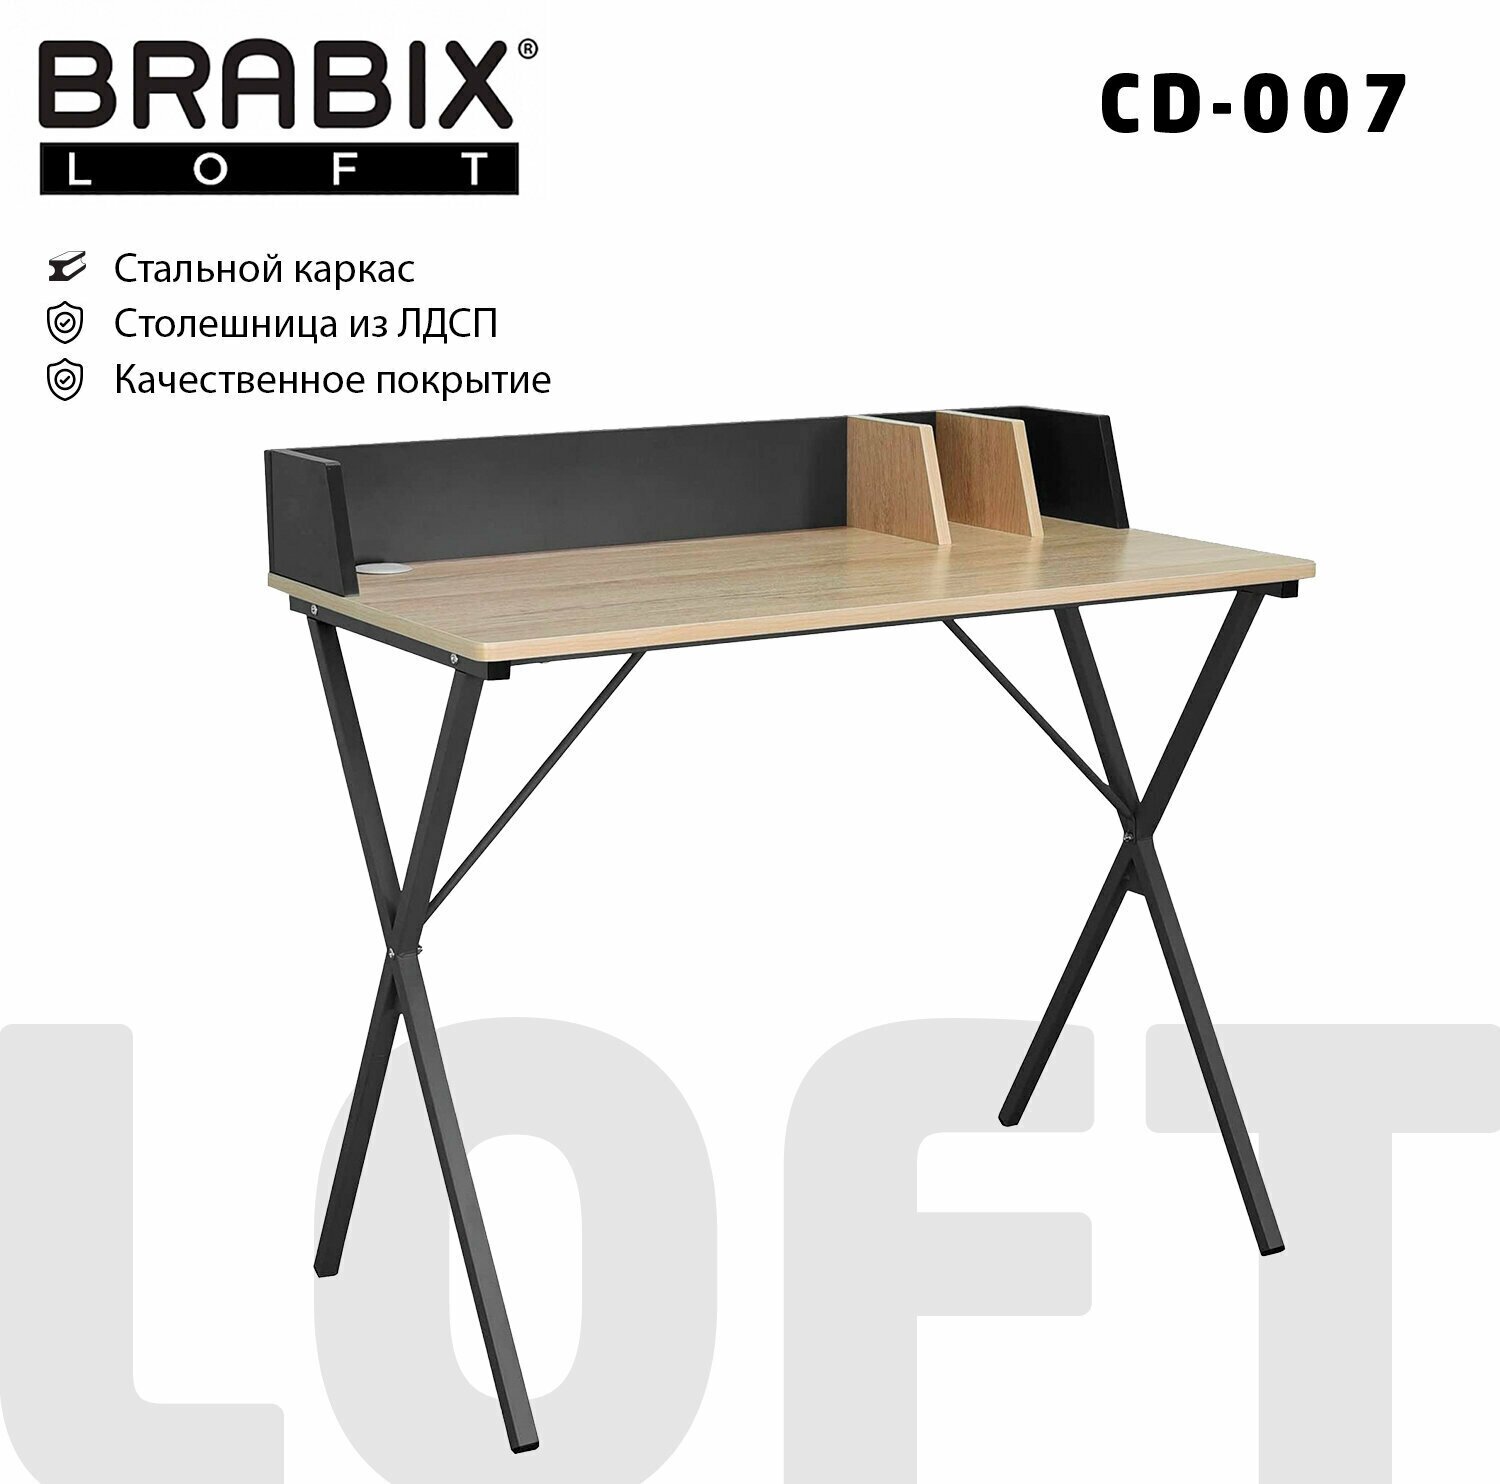 Стол на металлокаркасе Brabix loft, cd-007 800х500х840 мм, органайзер комбинированный